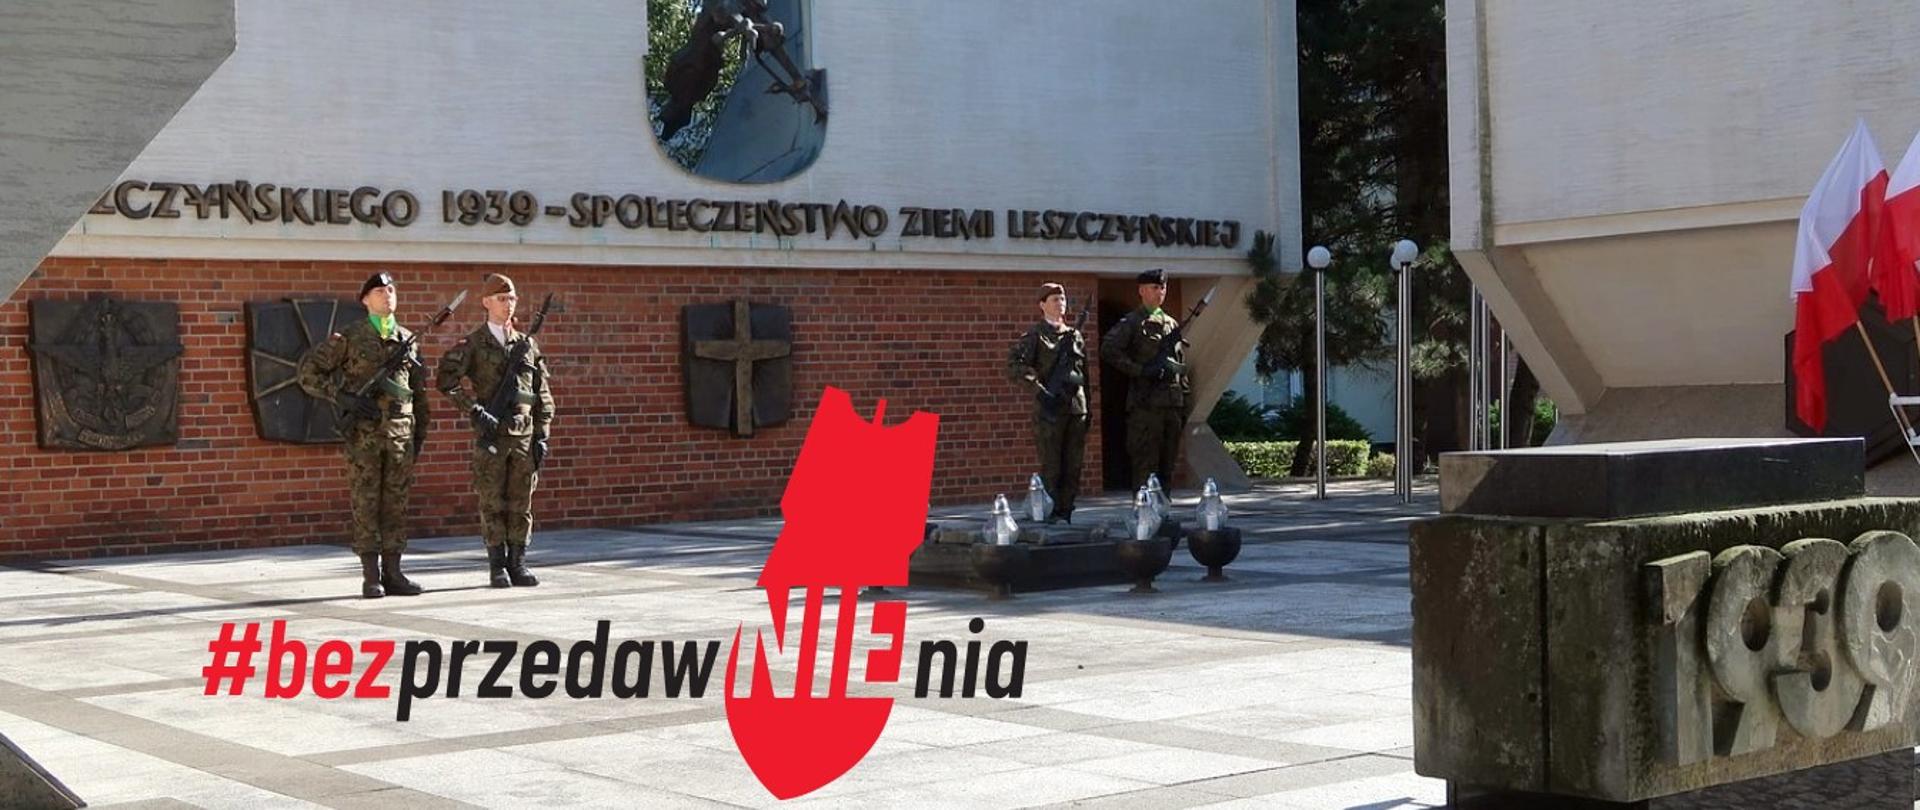 Zołnierze stoją na baczność przed pomnikiem upamiętniającym wybuch II Wojny Światowej